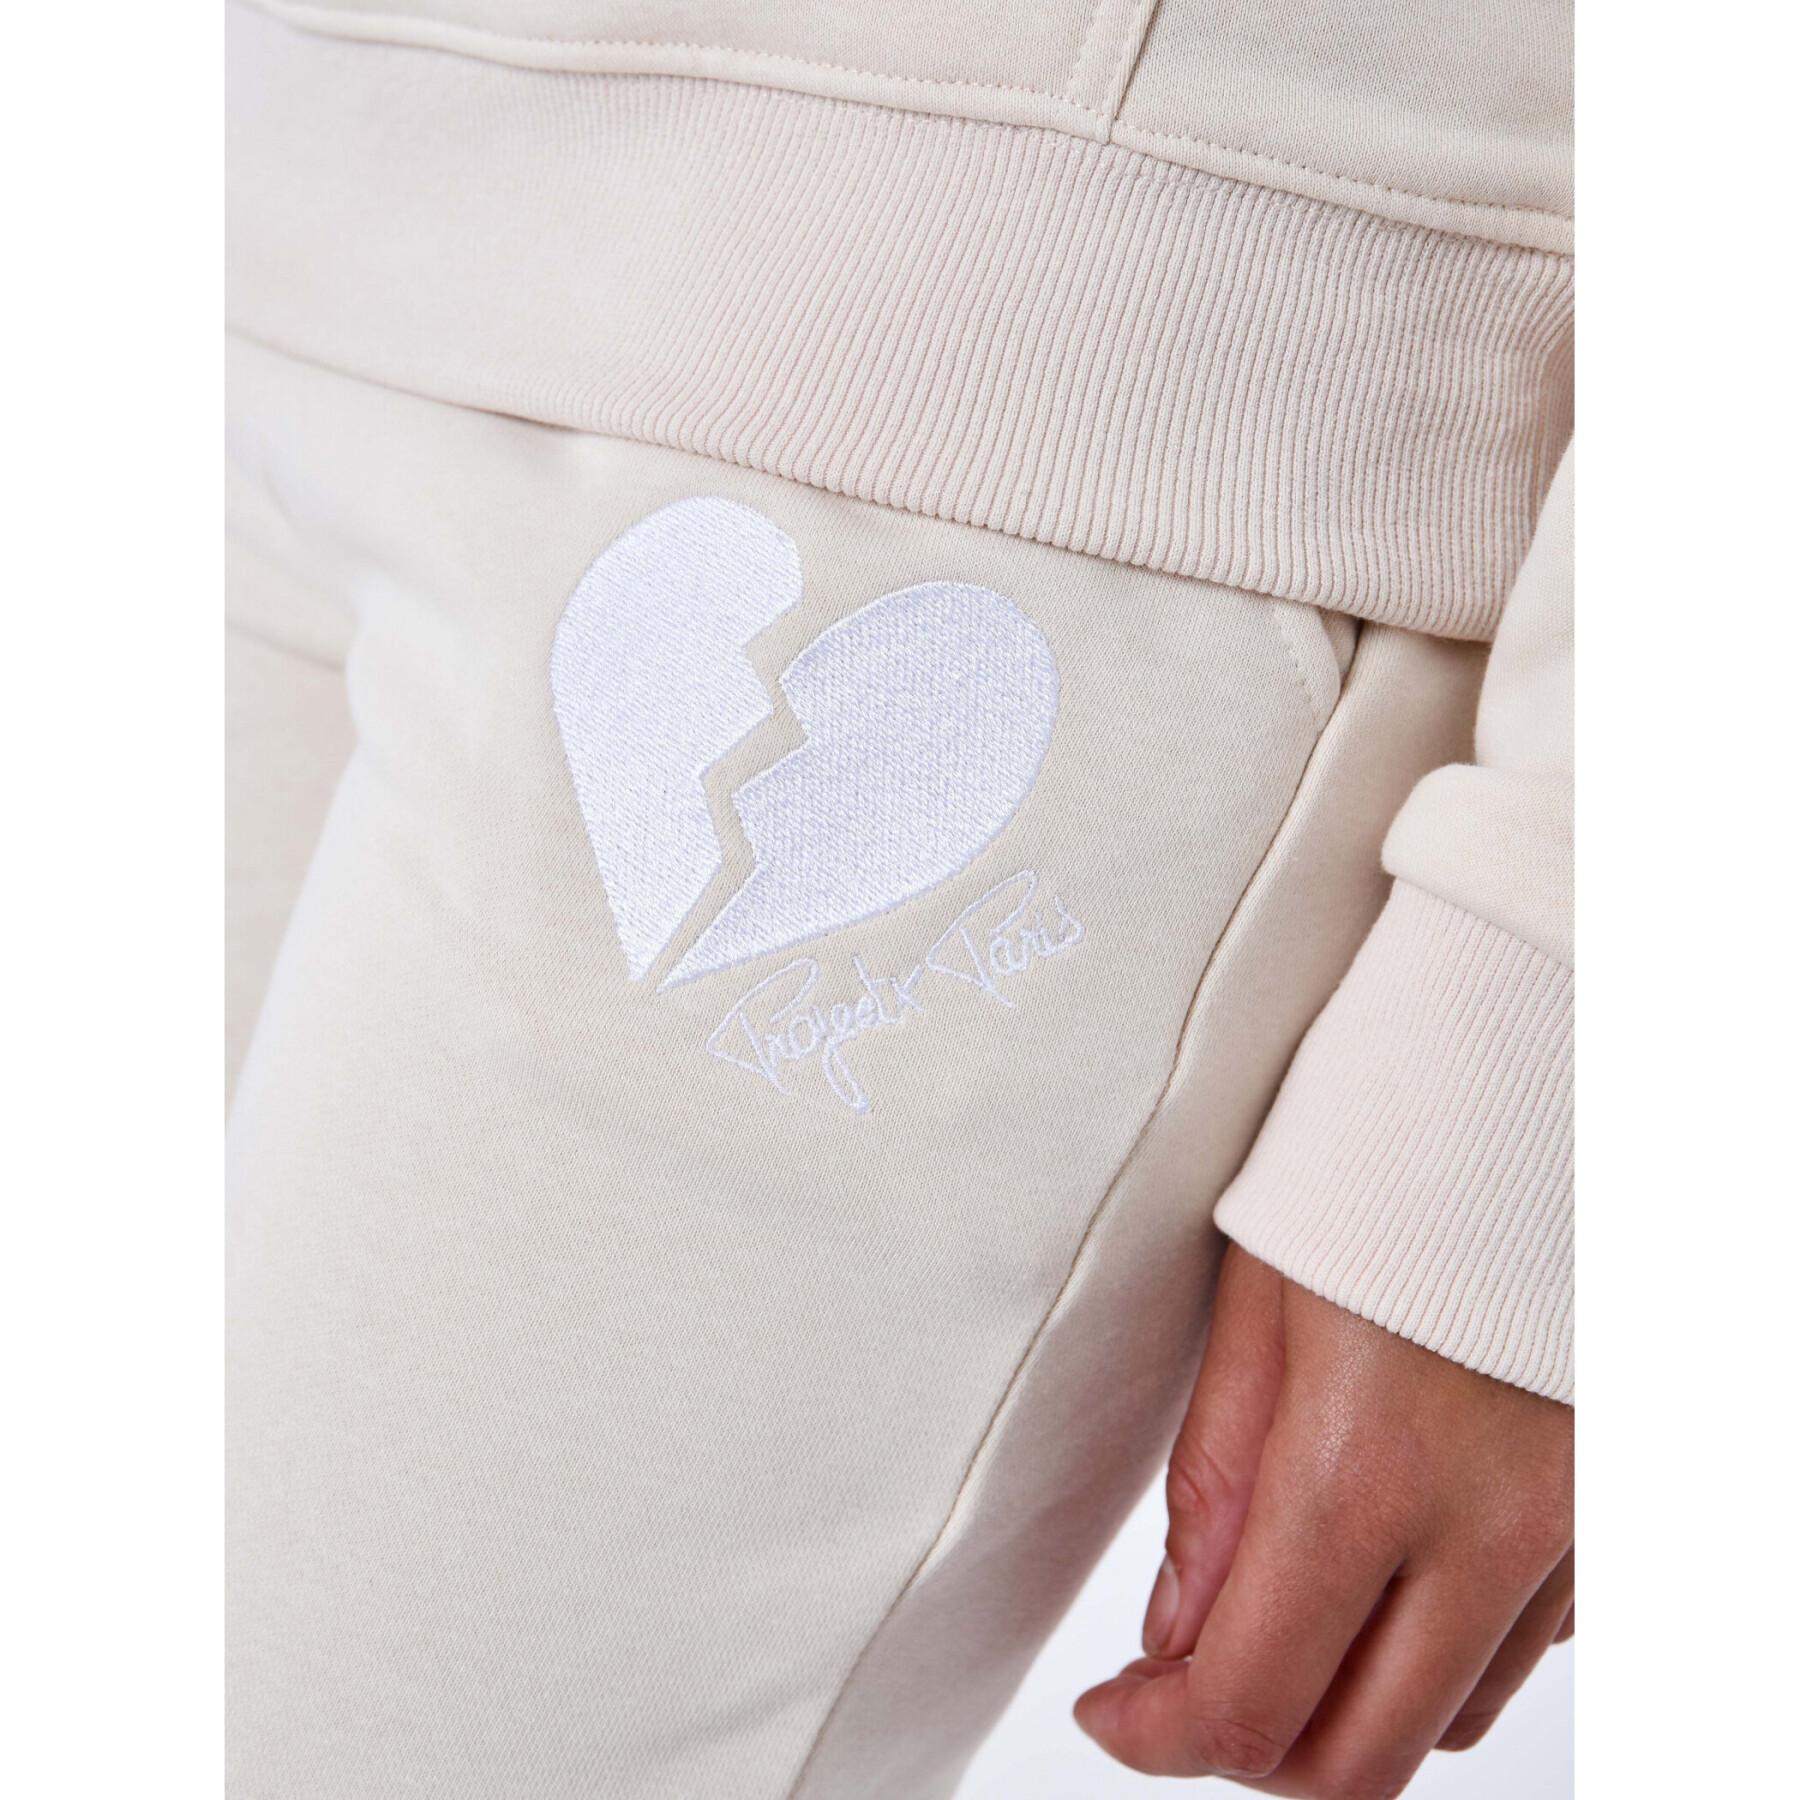 Women's broken-heart jogging suit Project X Paris